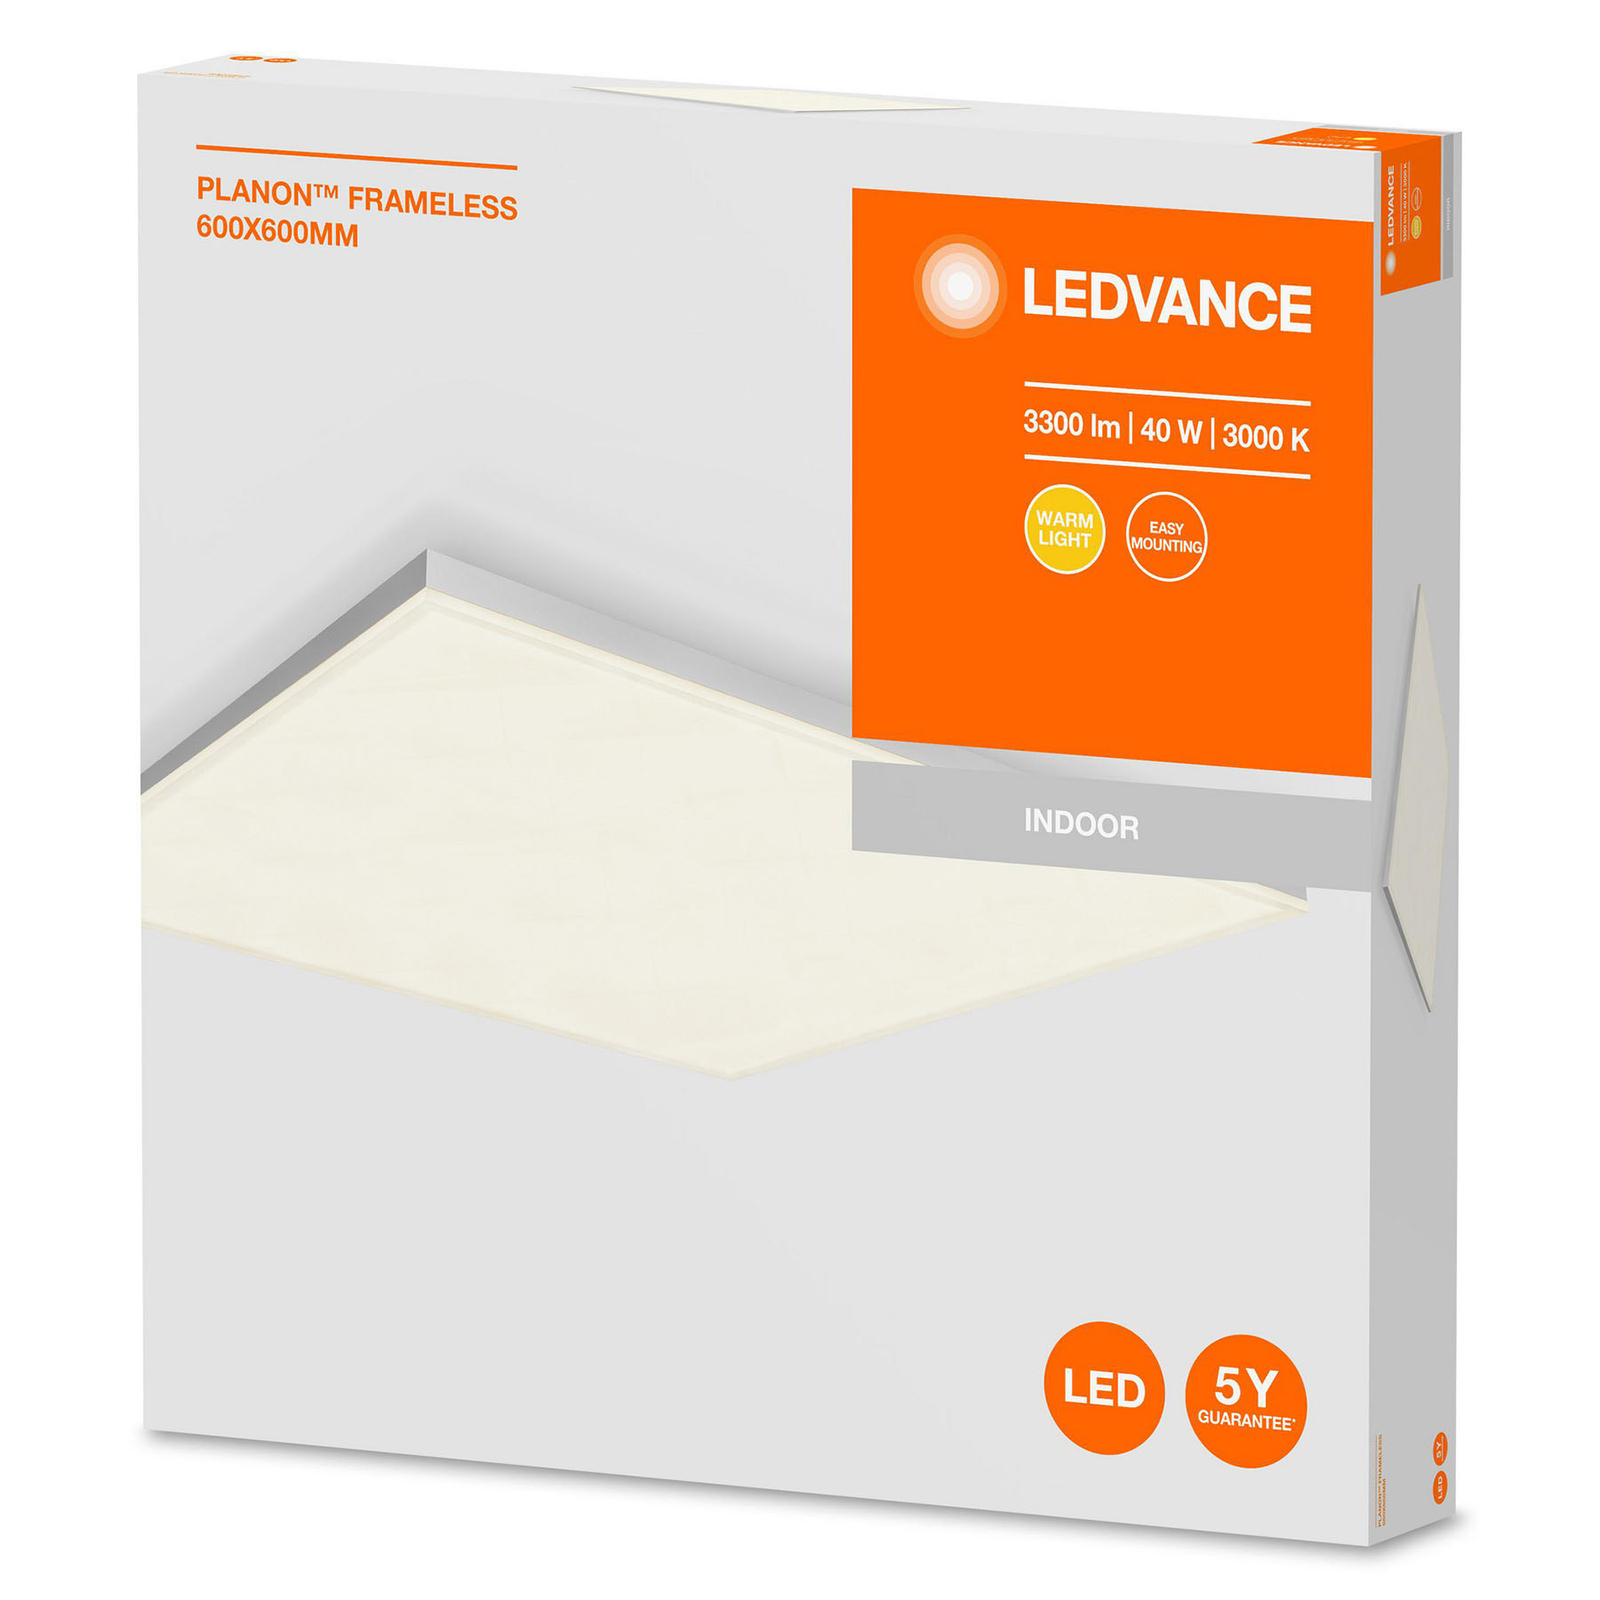 Ledvance Planon Frameless Square panou LED 60x60cm